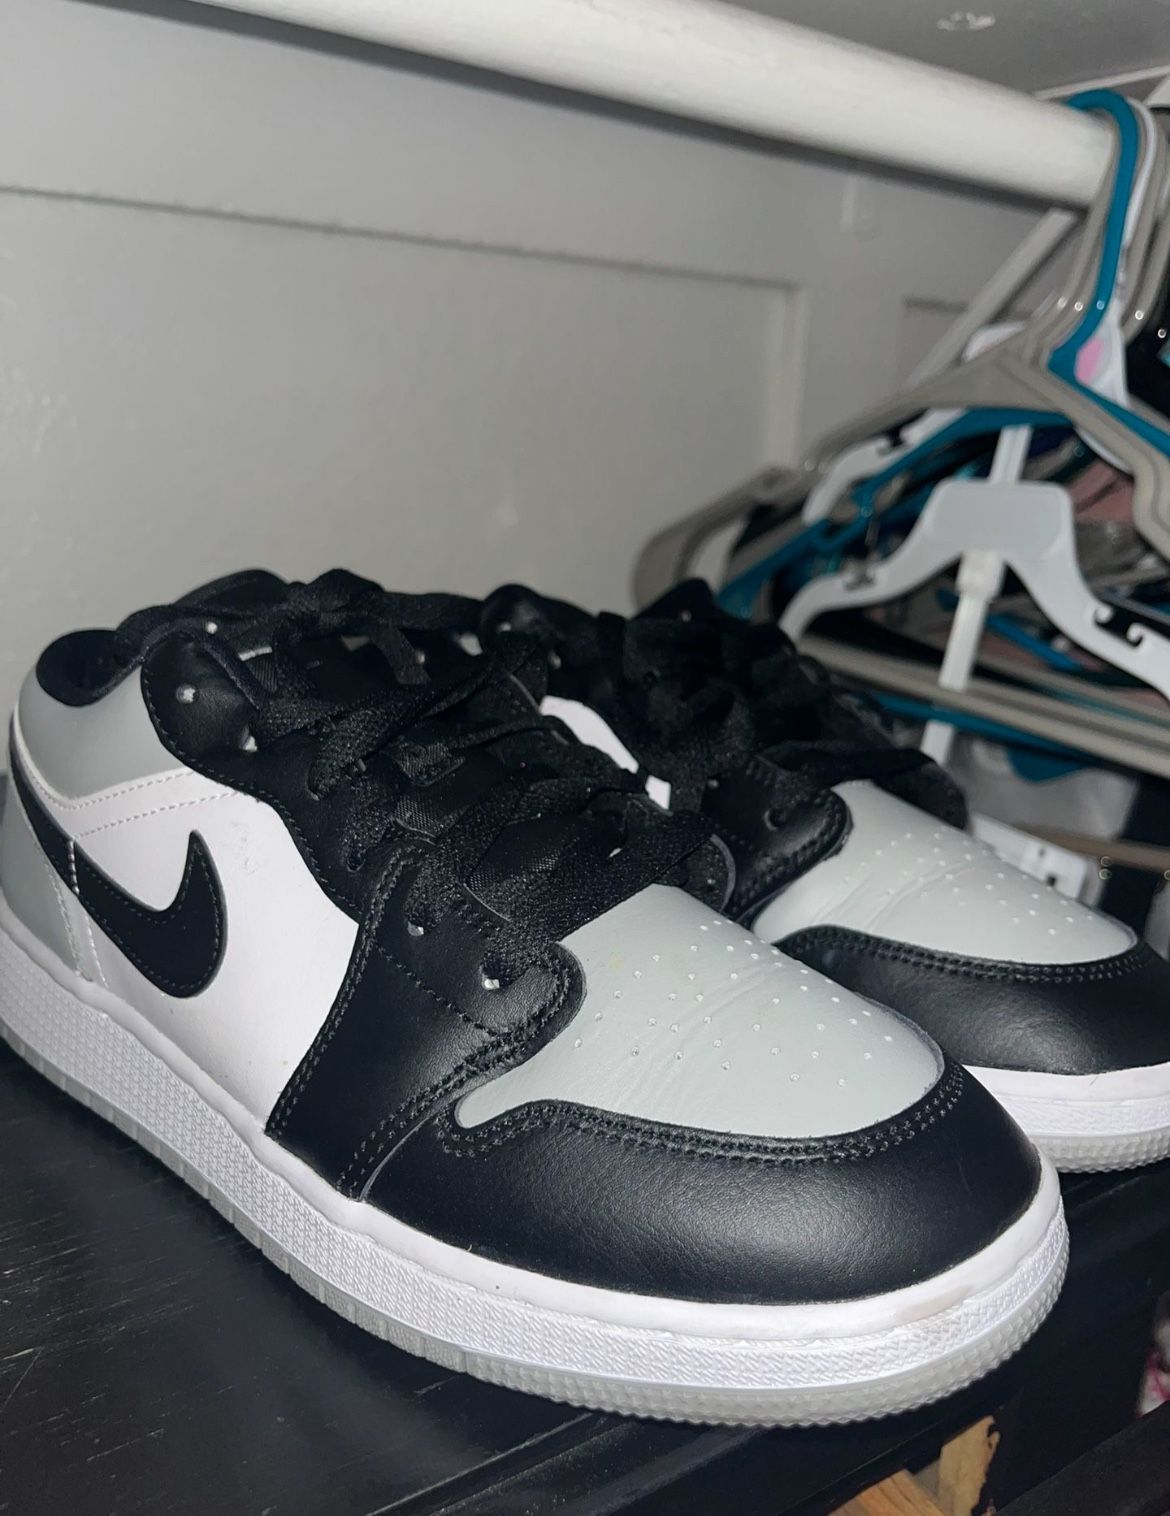 New Nike Jordans 